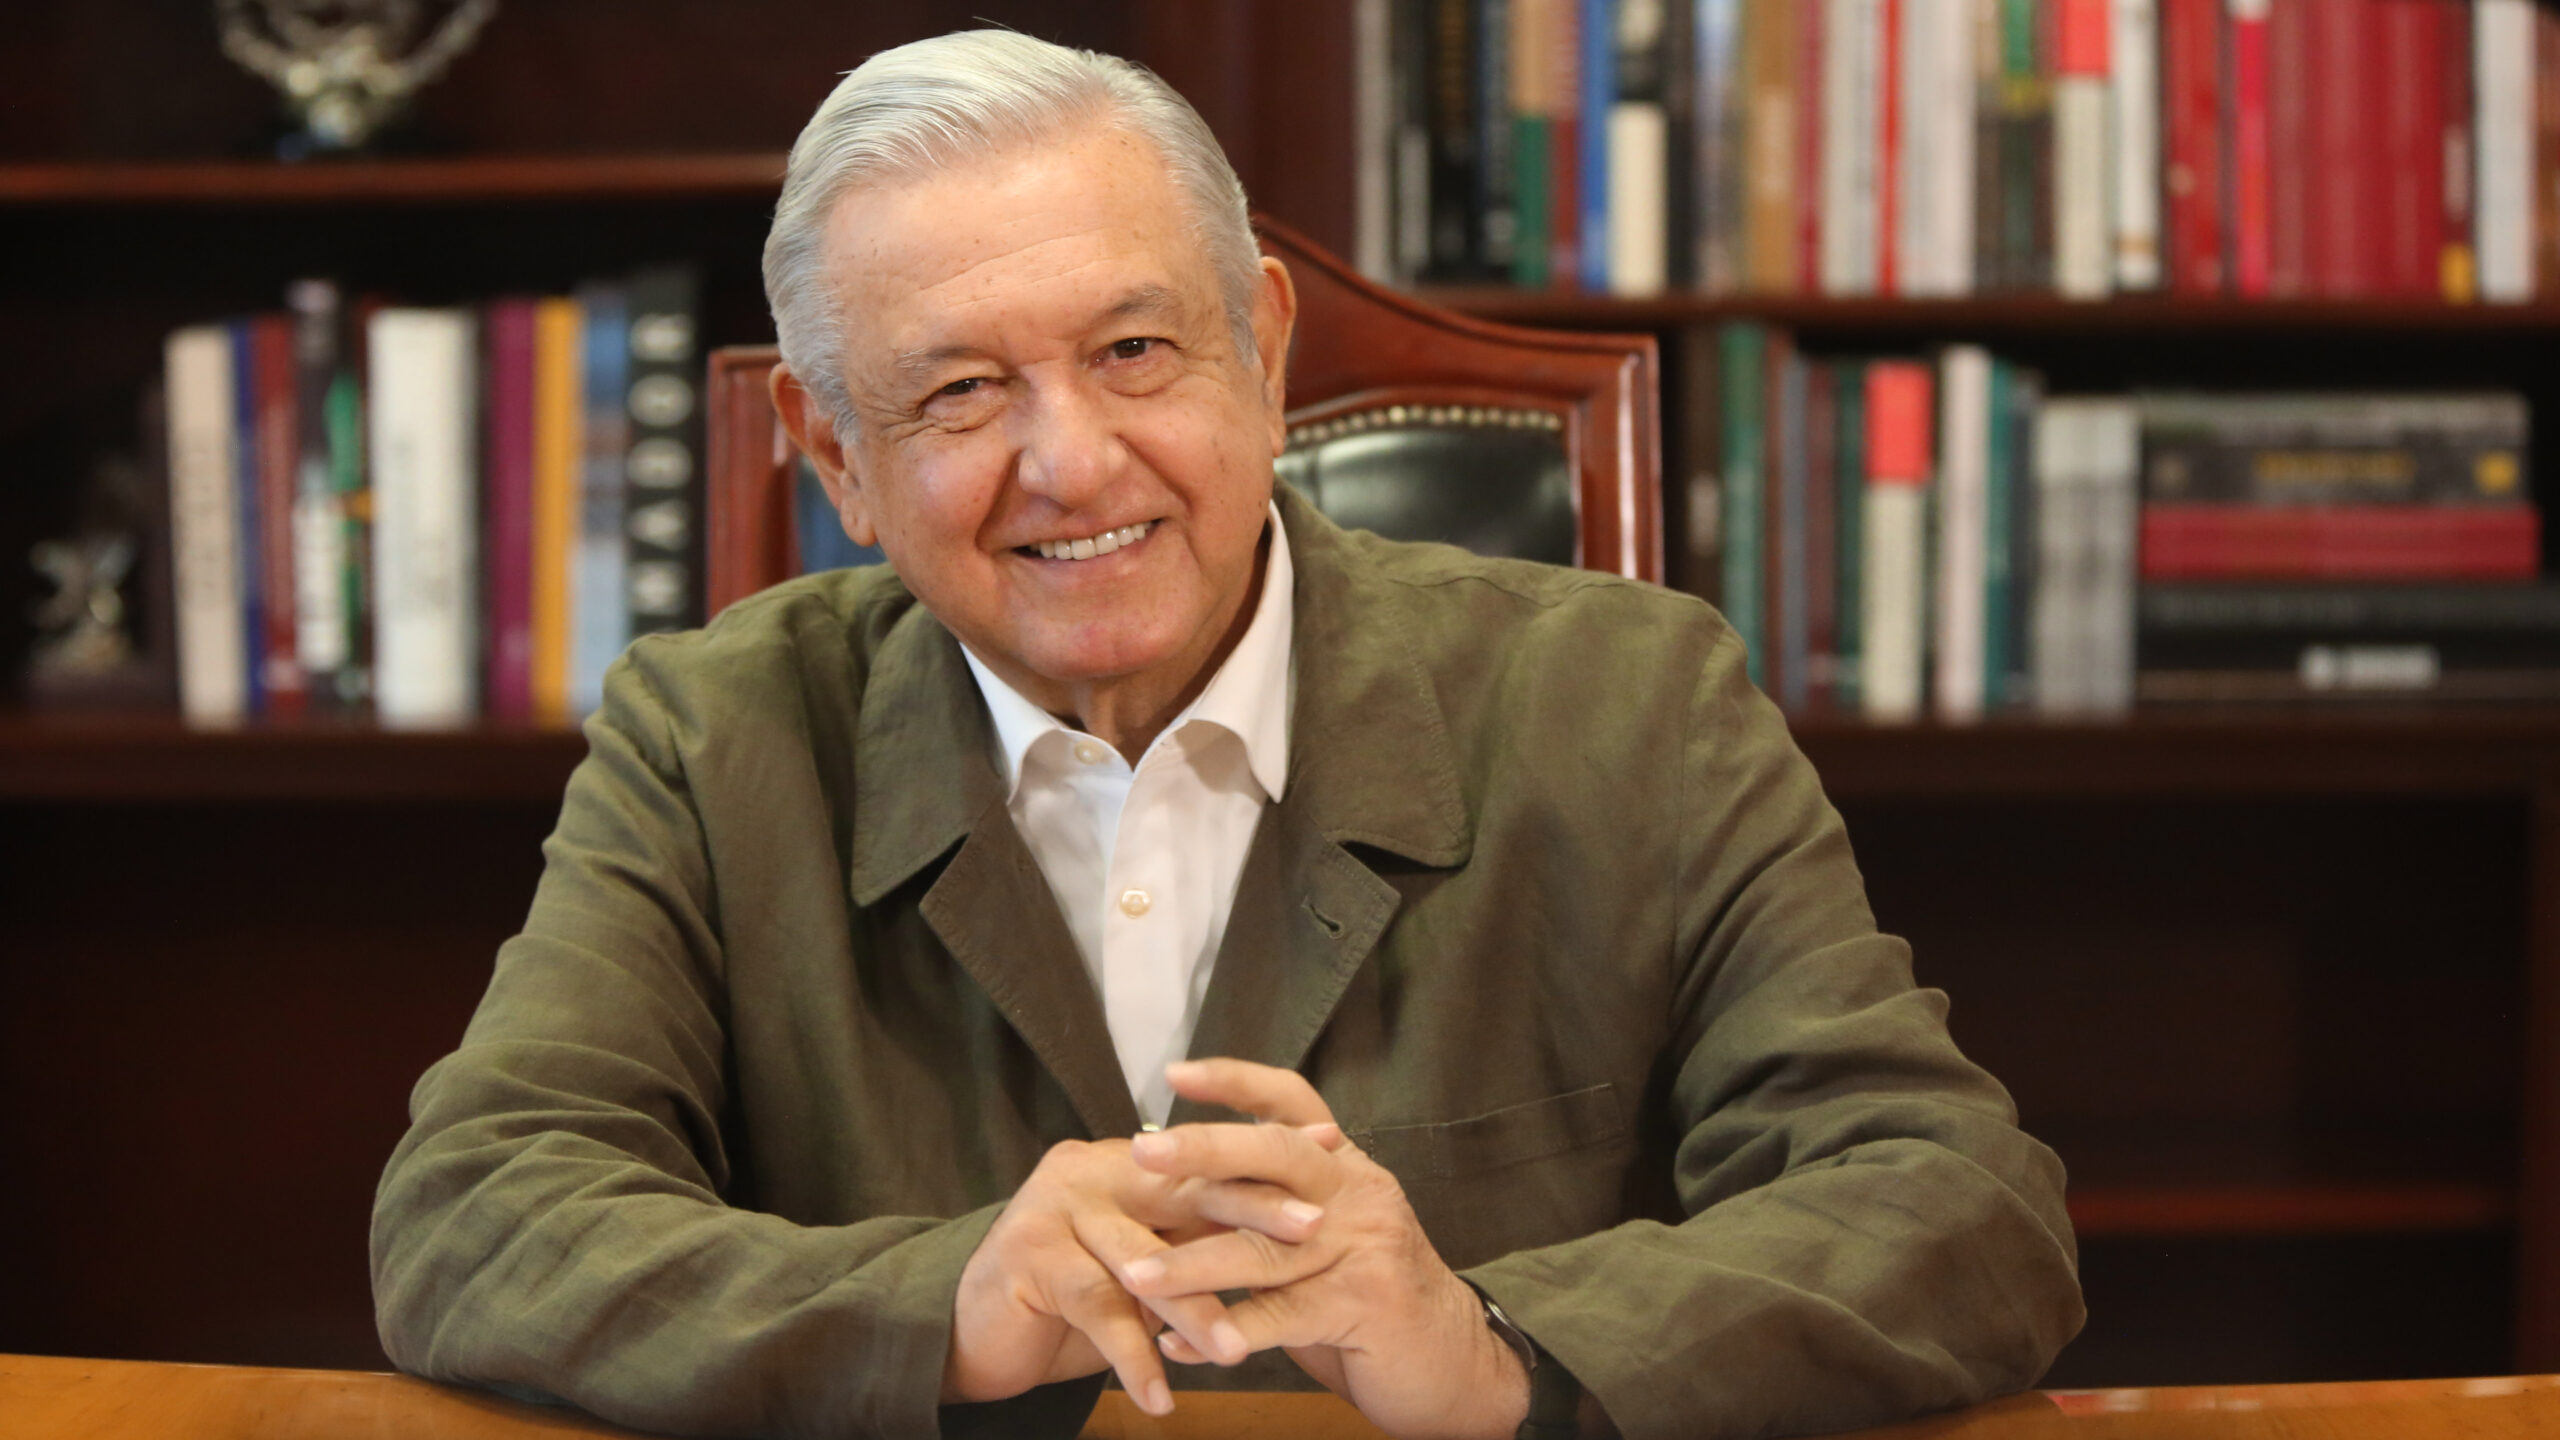 Hay presidente para llevar a cabo la transformacion afirma Lopez Obrador tras revision medica scaled